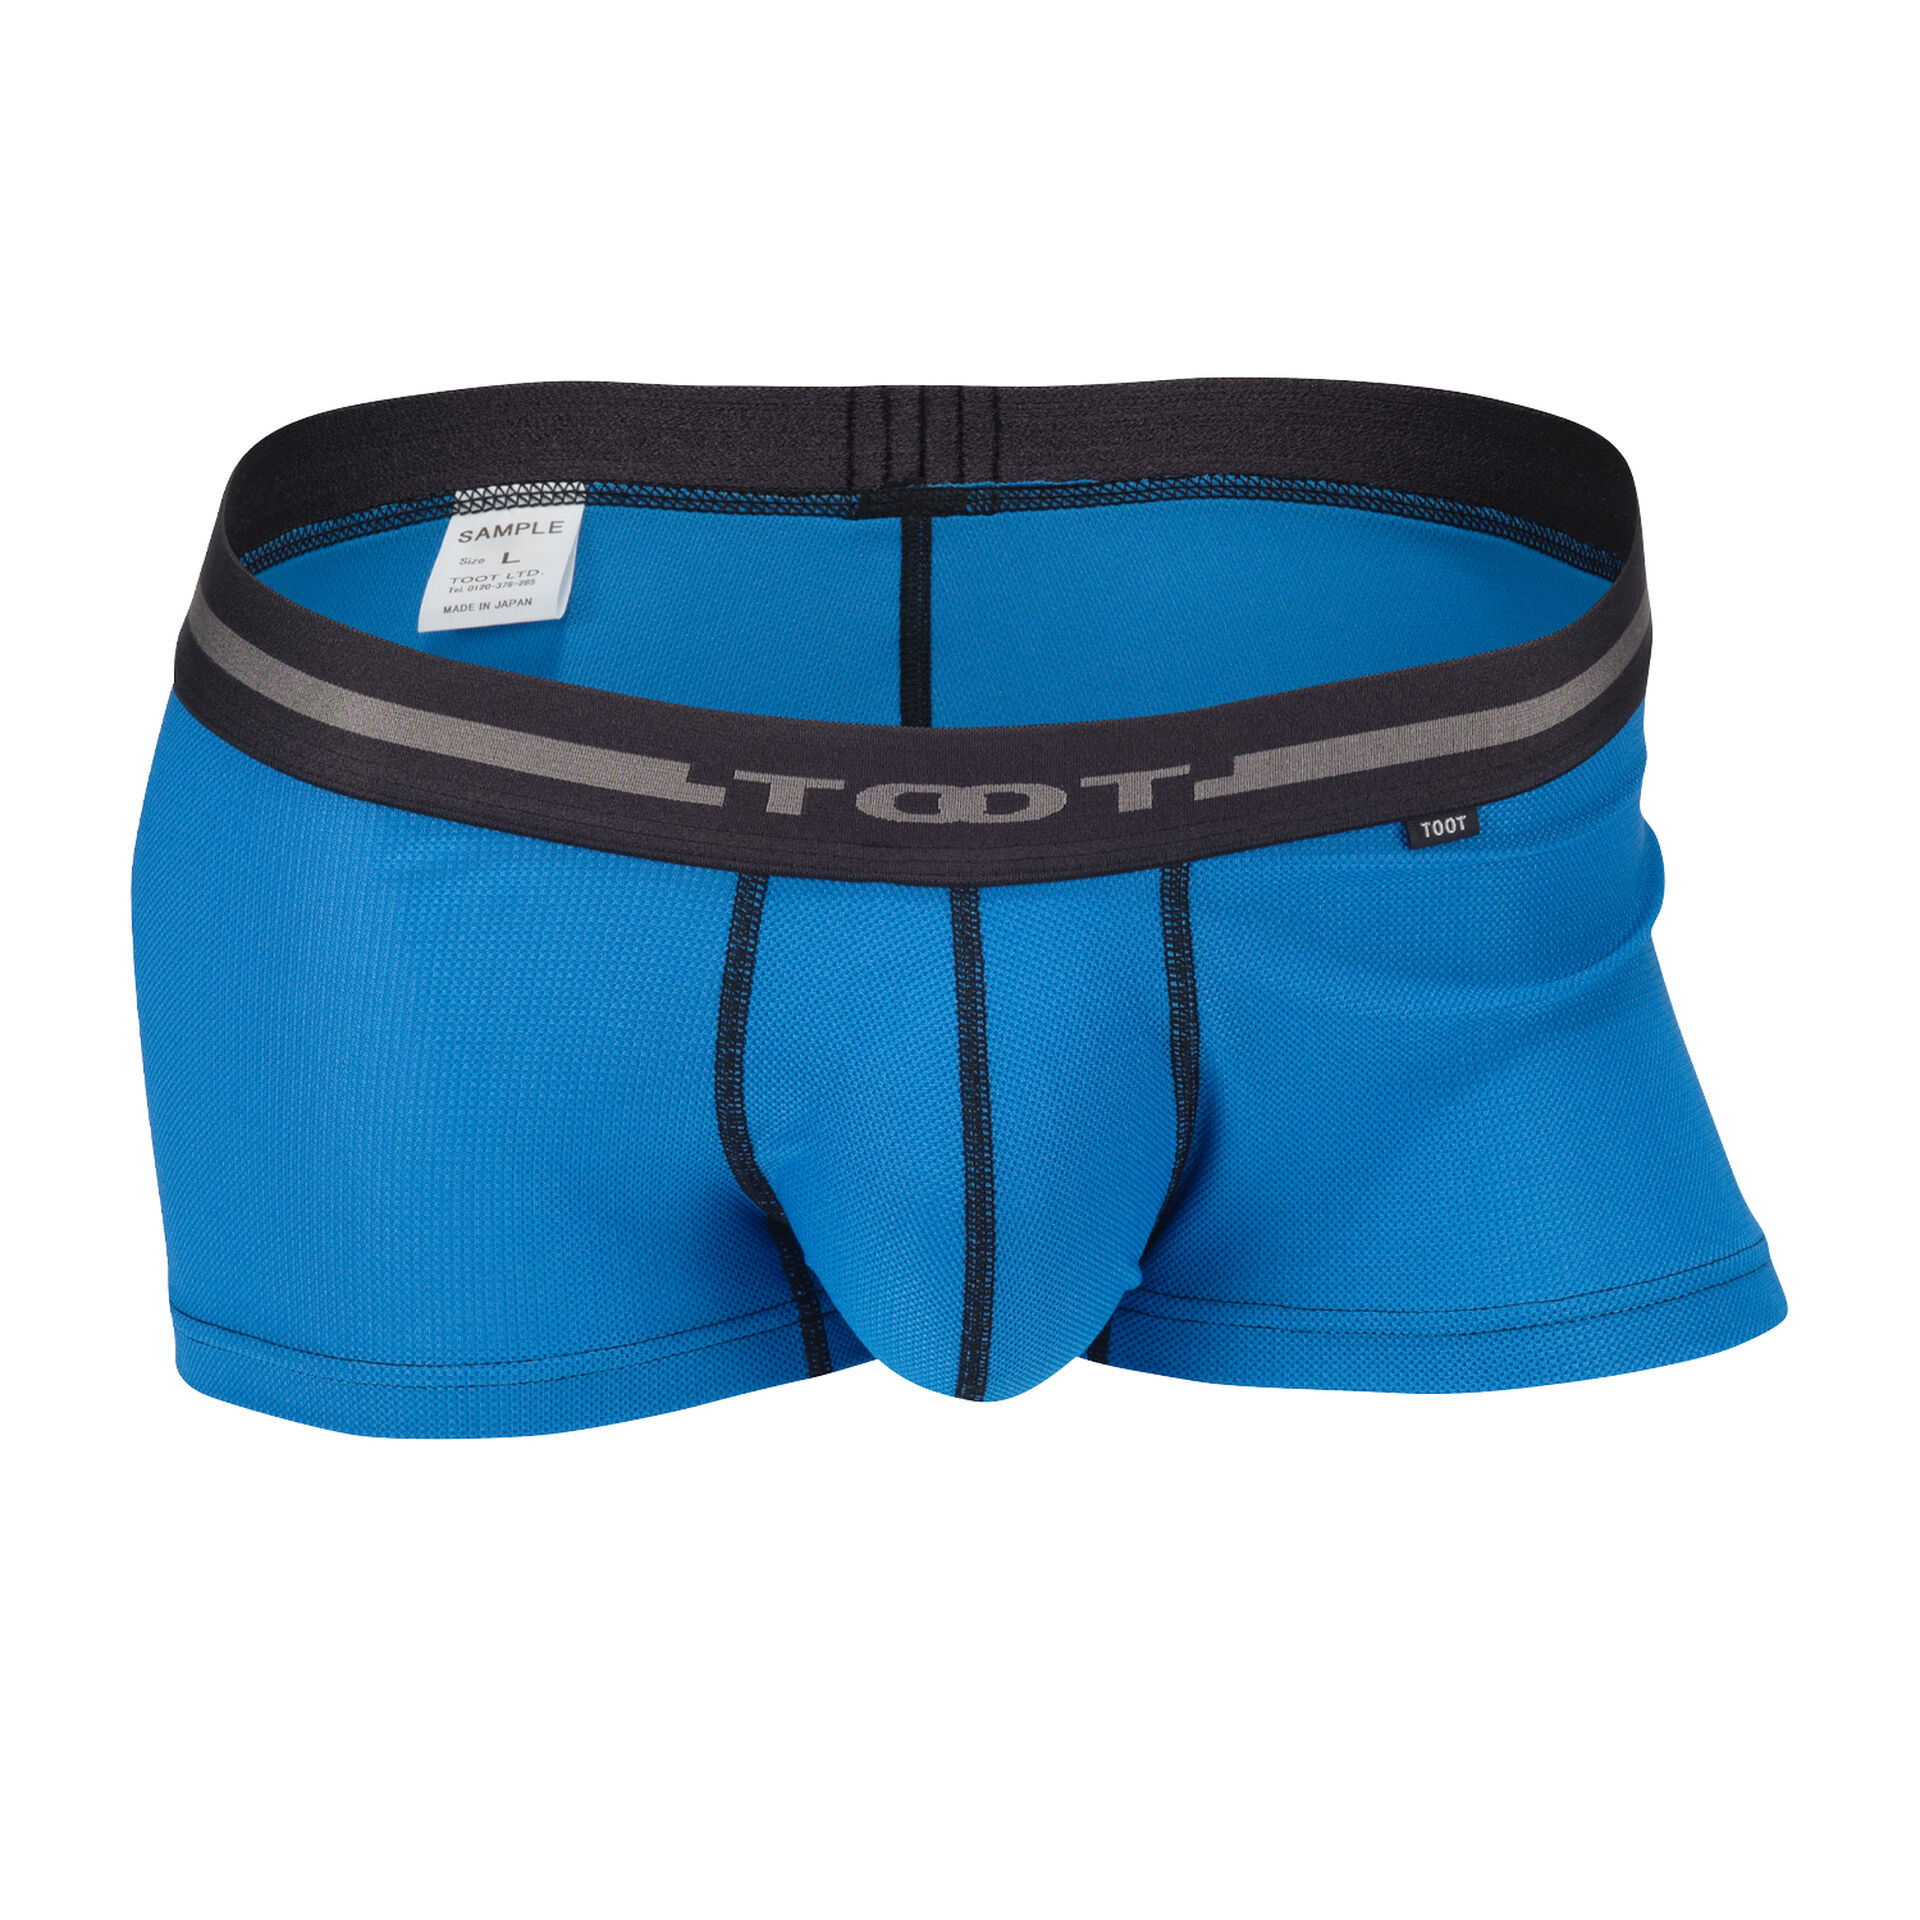 ReNEW TOOT MESH | Men's Underwear brand TOOT official website